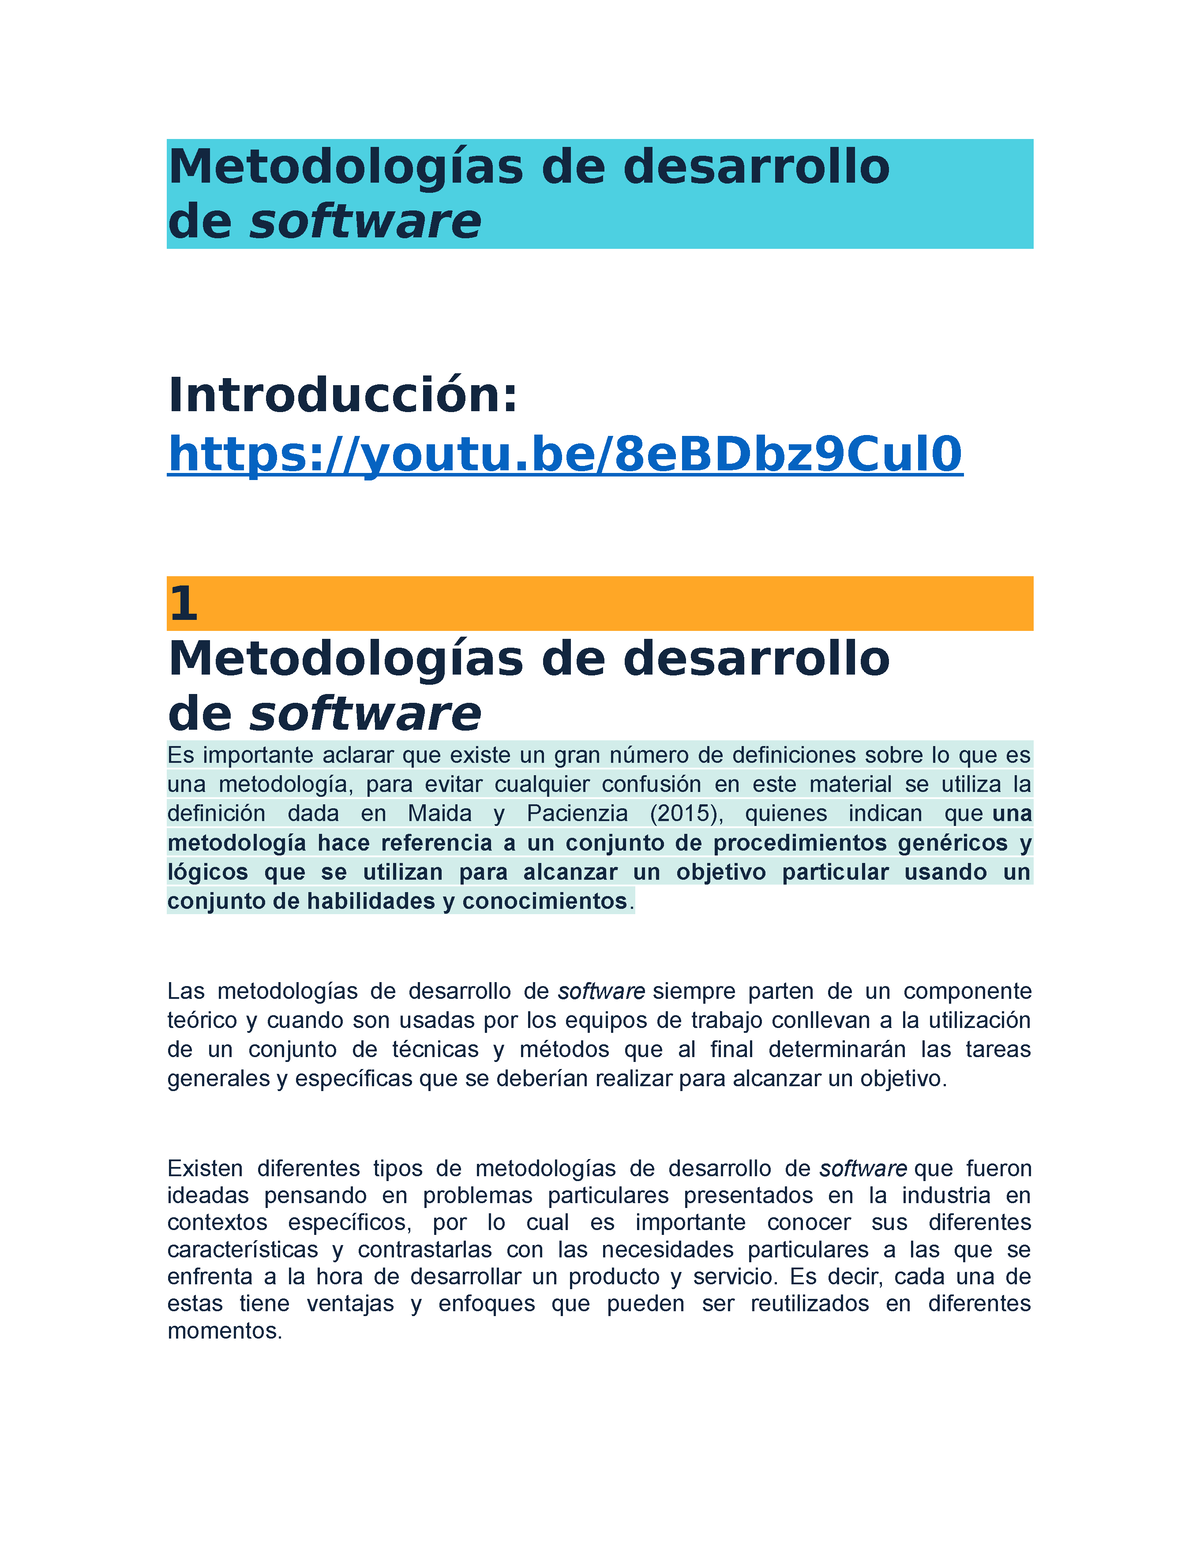 Métodologias Del Desarrollo De Software Metodologías De Desarrollo De Software Introducción 2706